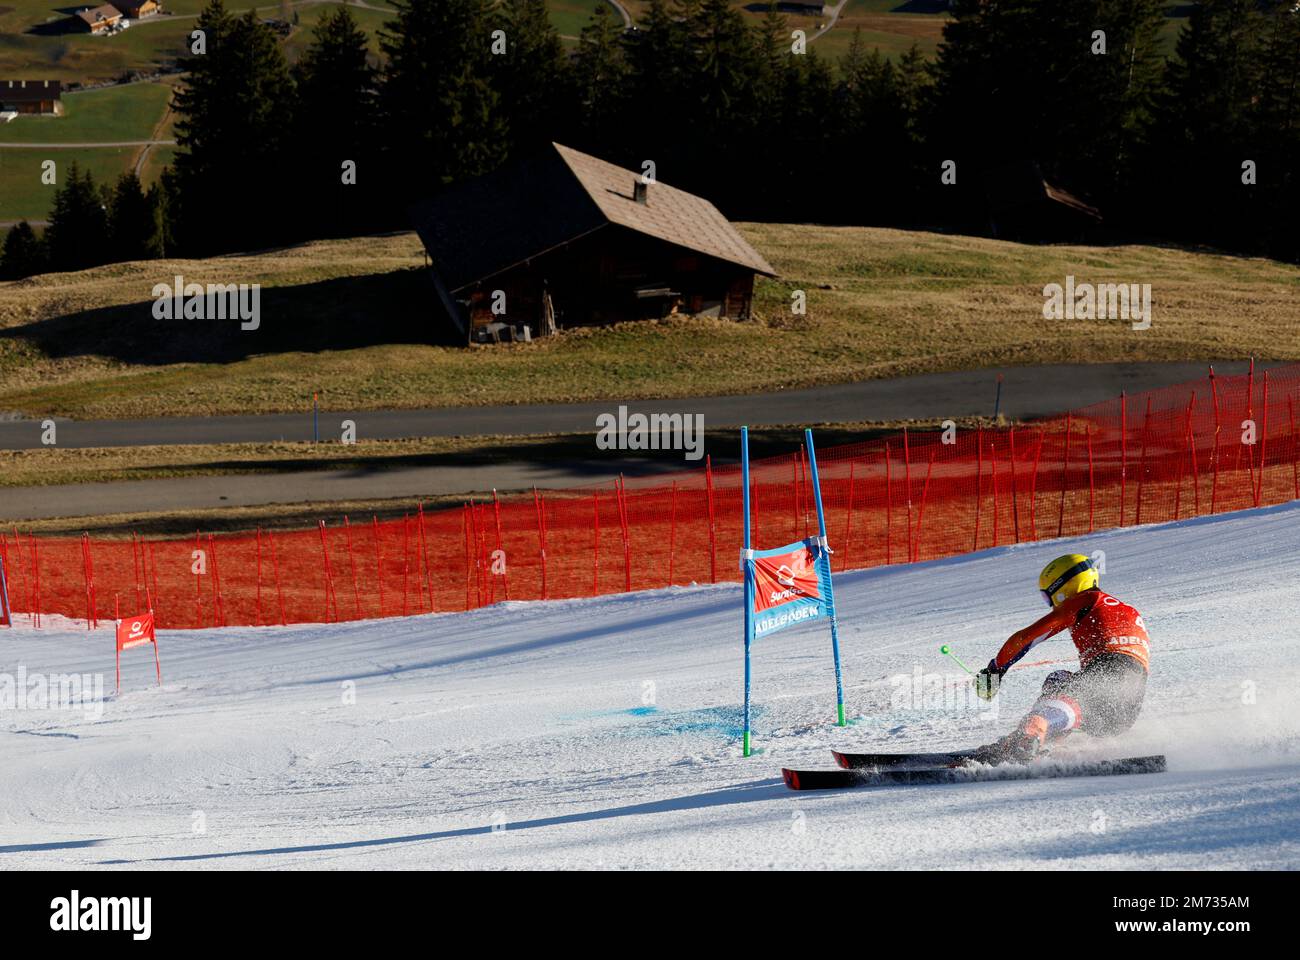 Ski alpin - FIS coupe du monde de ski alpin - Slalom géant masculin - Adelboden, Suisse - 7 janvier 2023 Meiners néerlandais Maarten action REUTERS/Stefan Wermuth Banque D'Images